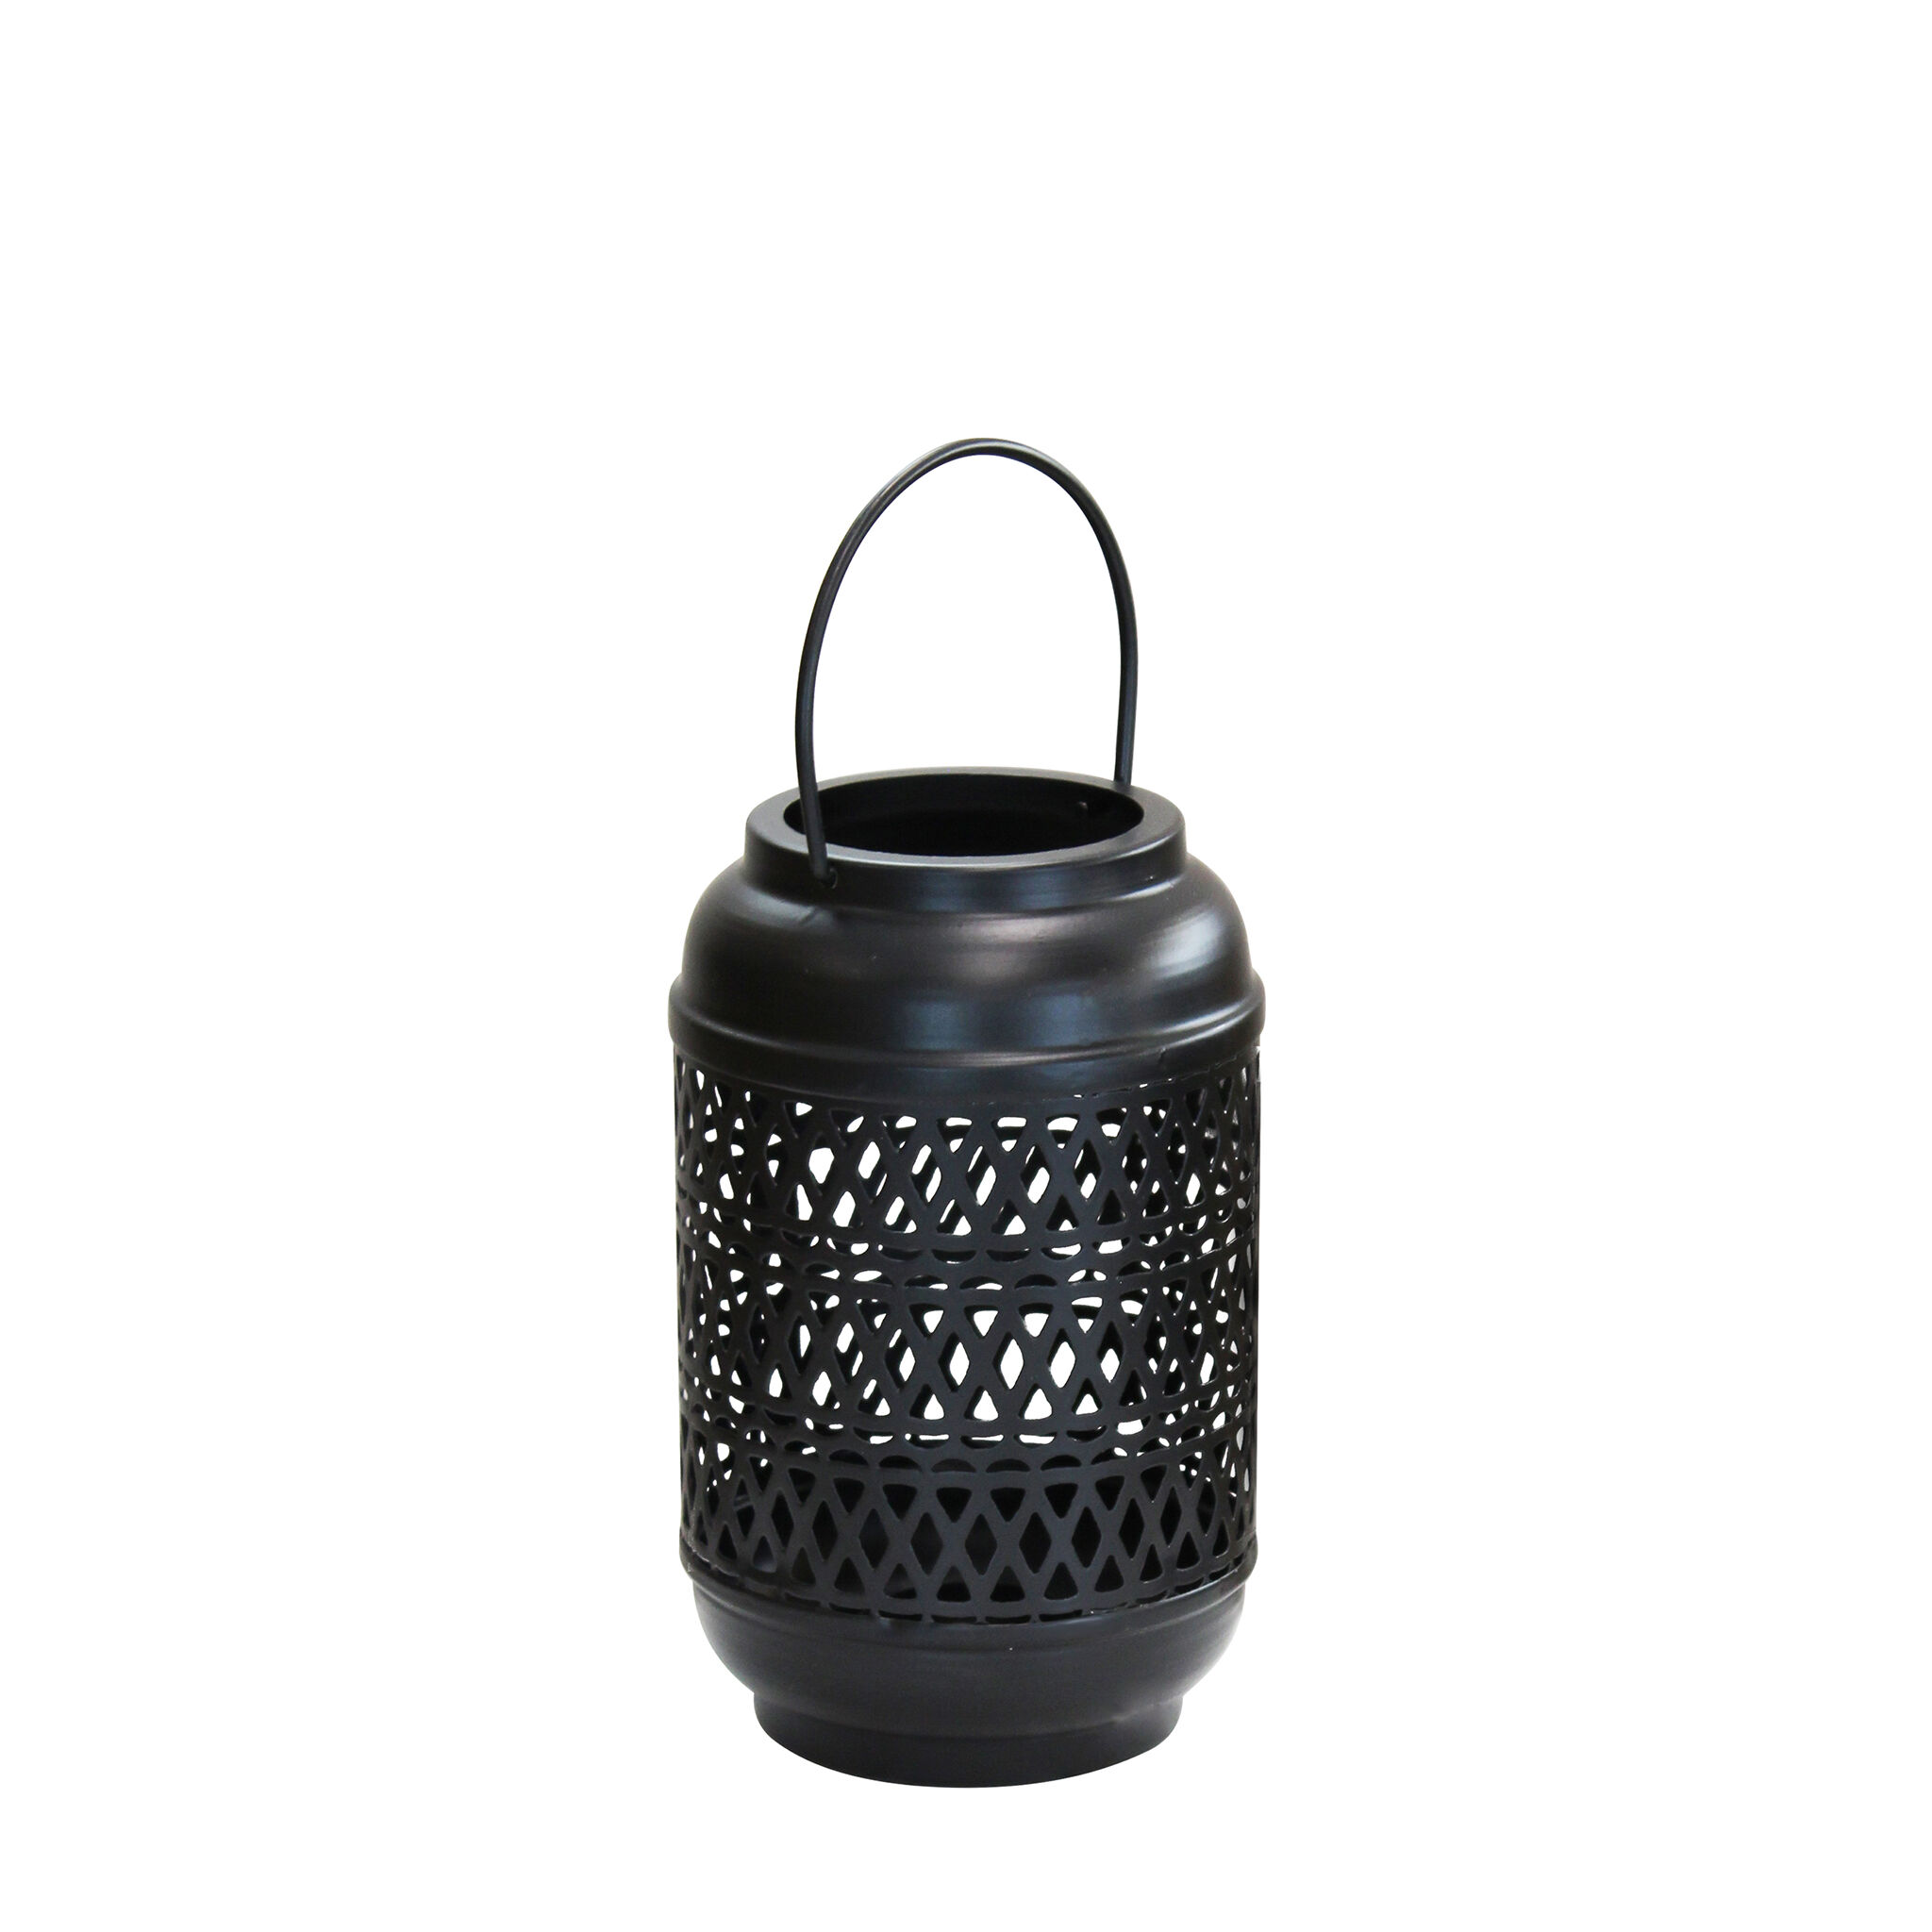 Milani Home lanterna in metallo di design moderno per giardino cm 10 x 10 x 17 h Nero 10 x 17 x 10 cm